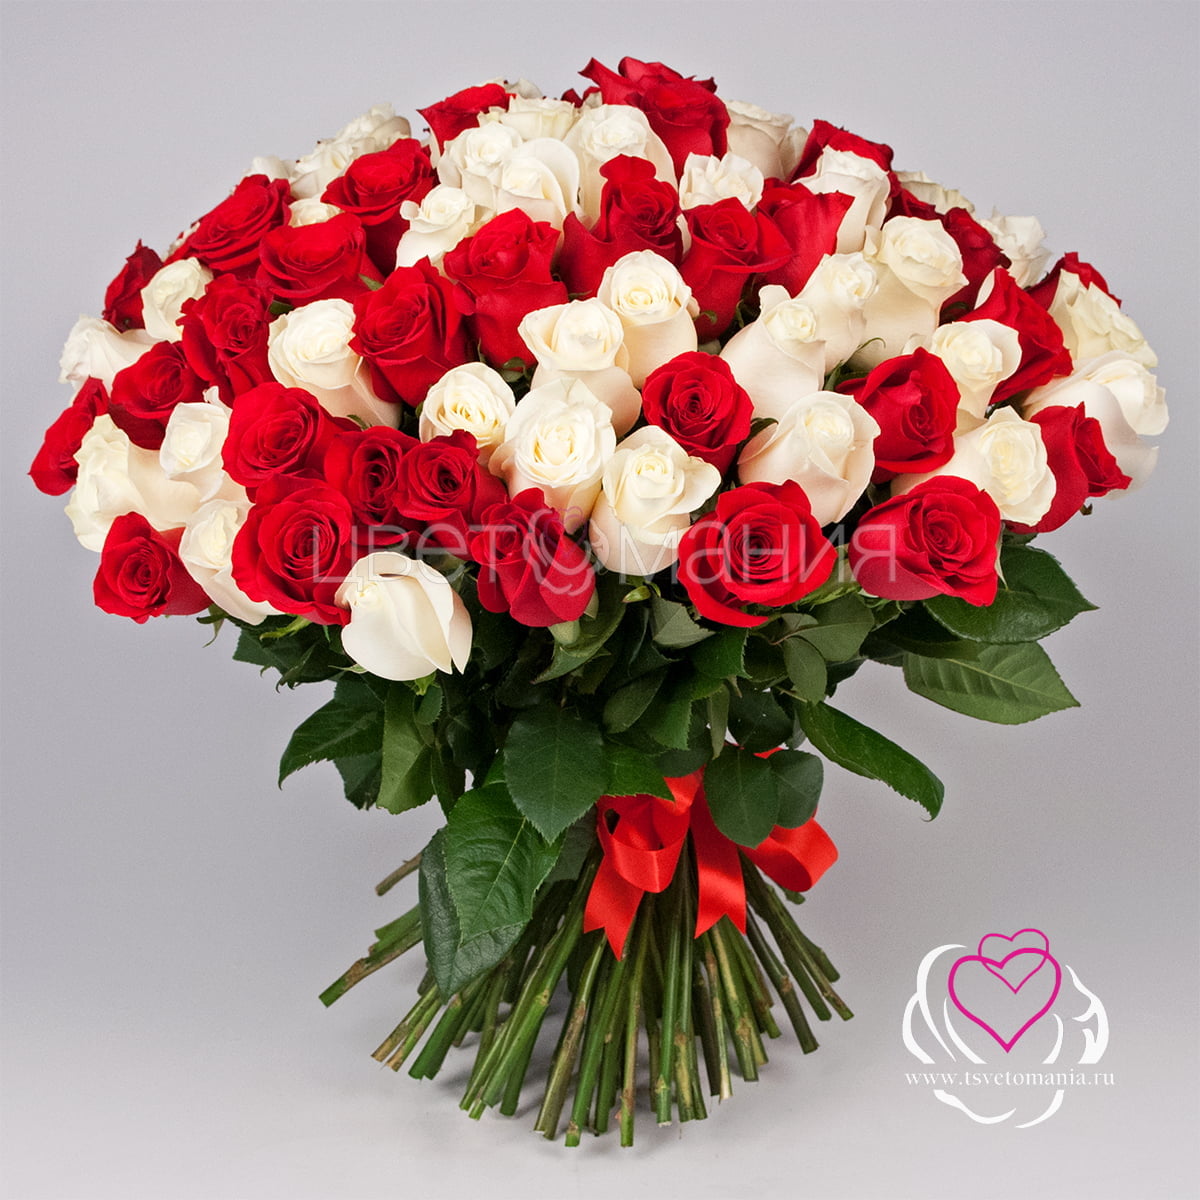 101 белая и красная роза 50 см Premium значок pinpinpin роза красная